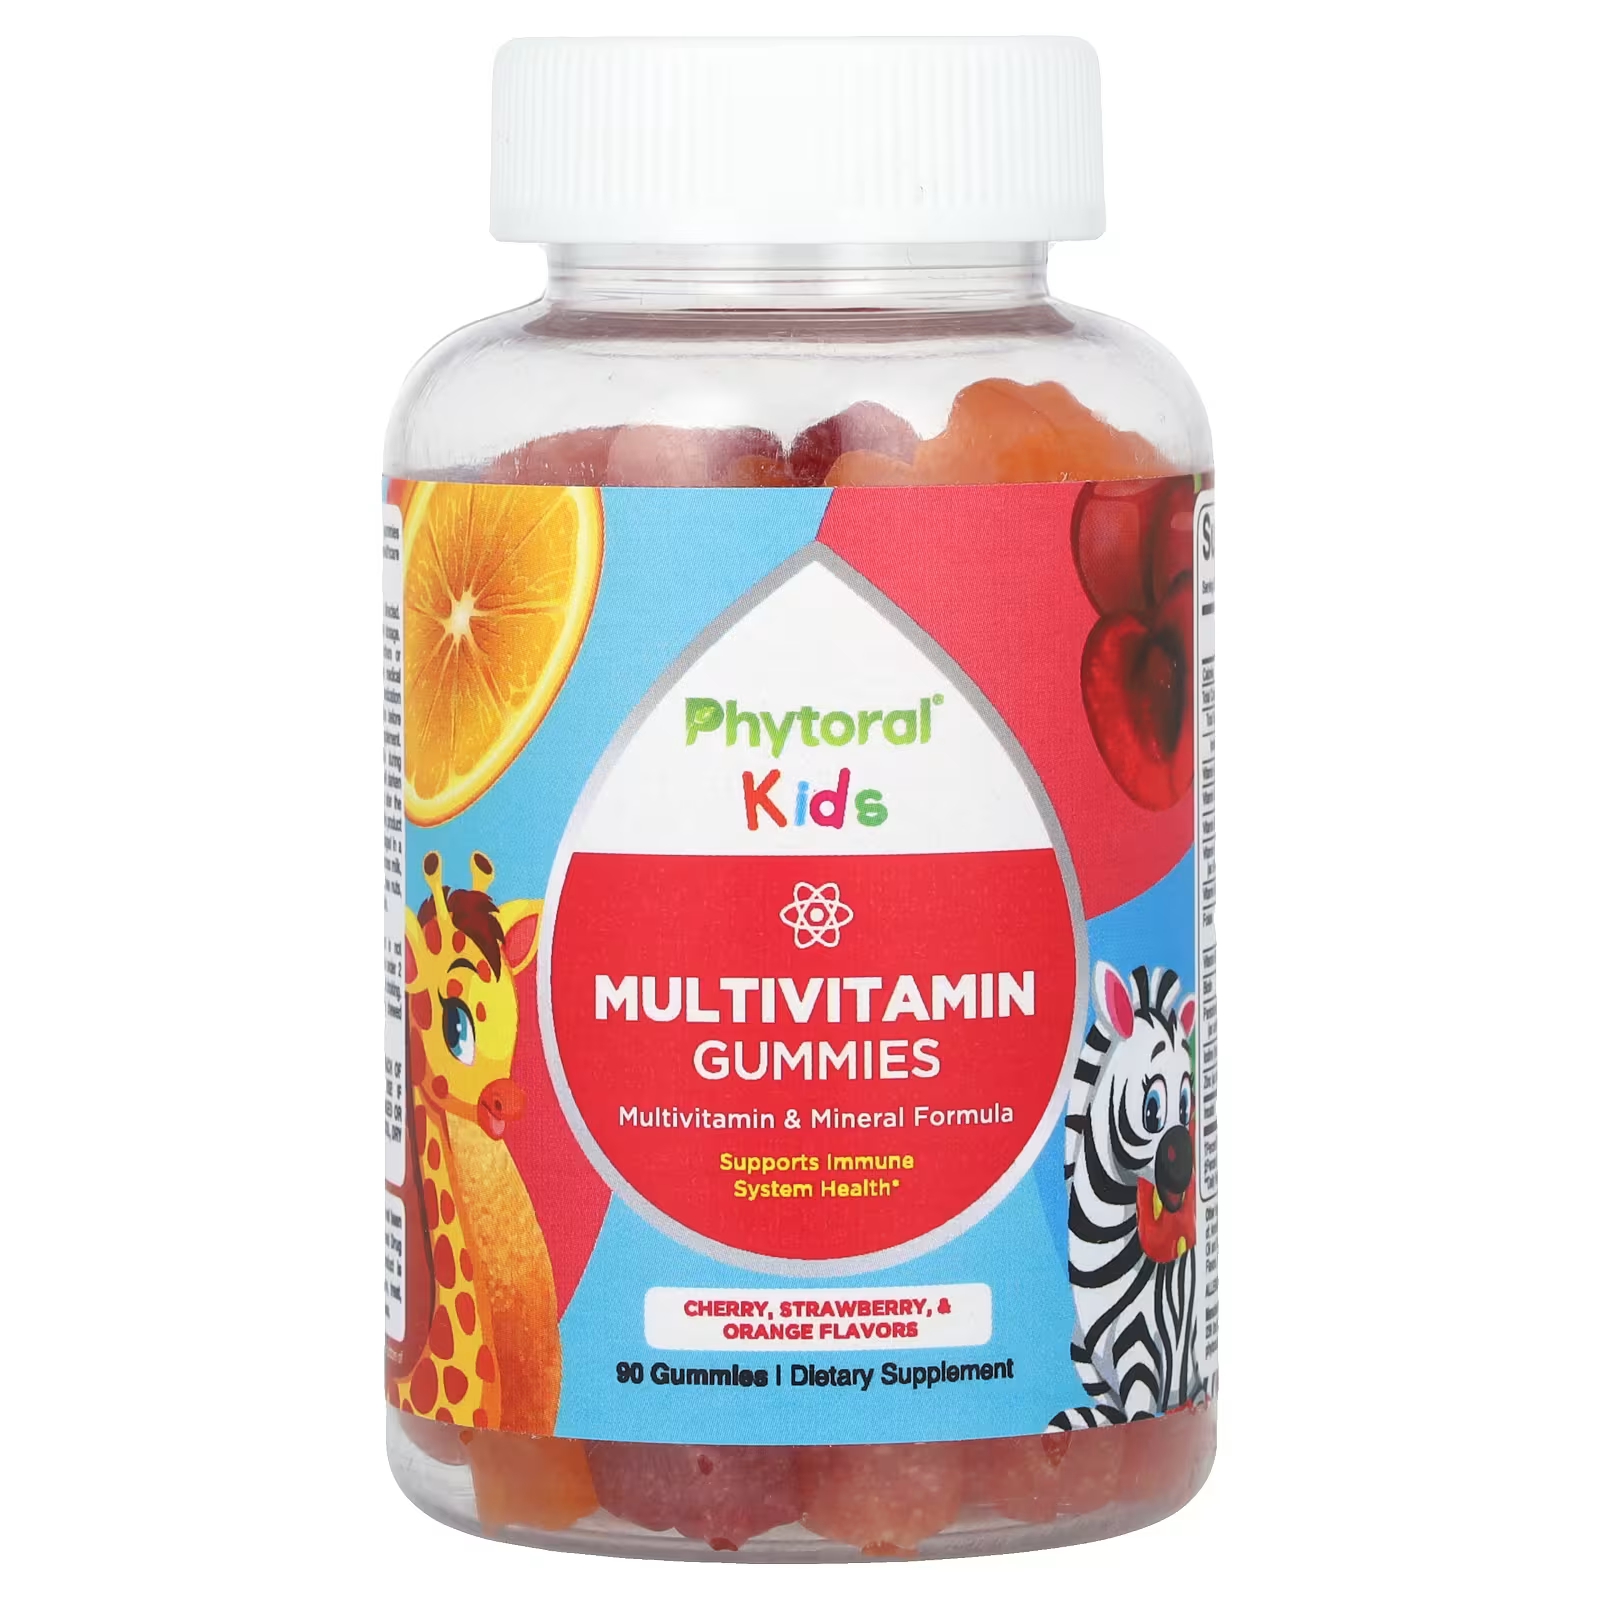 Мультивитаминны Phytoral Kids с вишней, клубникой и апельсином, 90 штук пищевая добавка непочатое море и земля мультивитаминный и минеральный комплекс для мужщин 60 таблеток